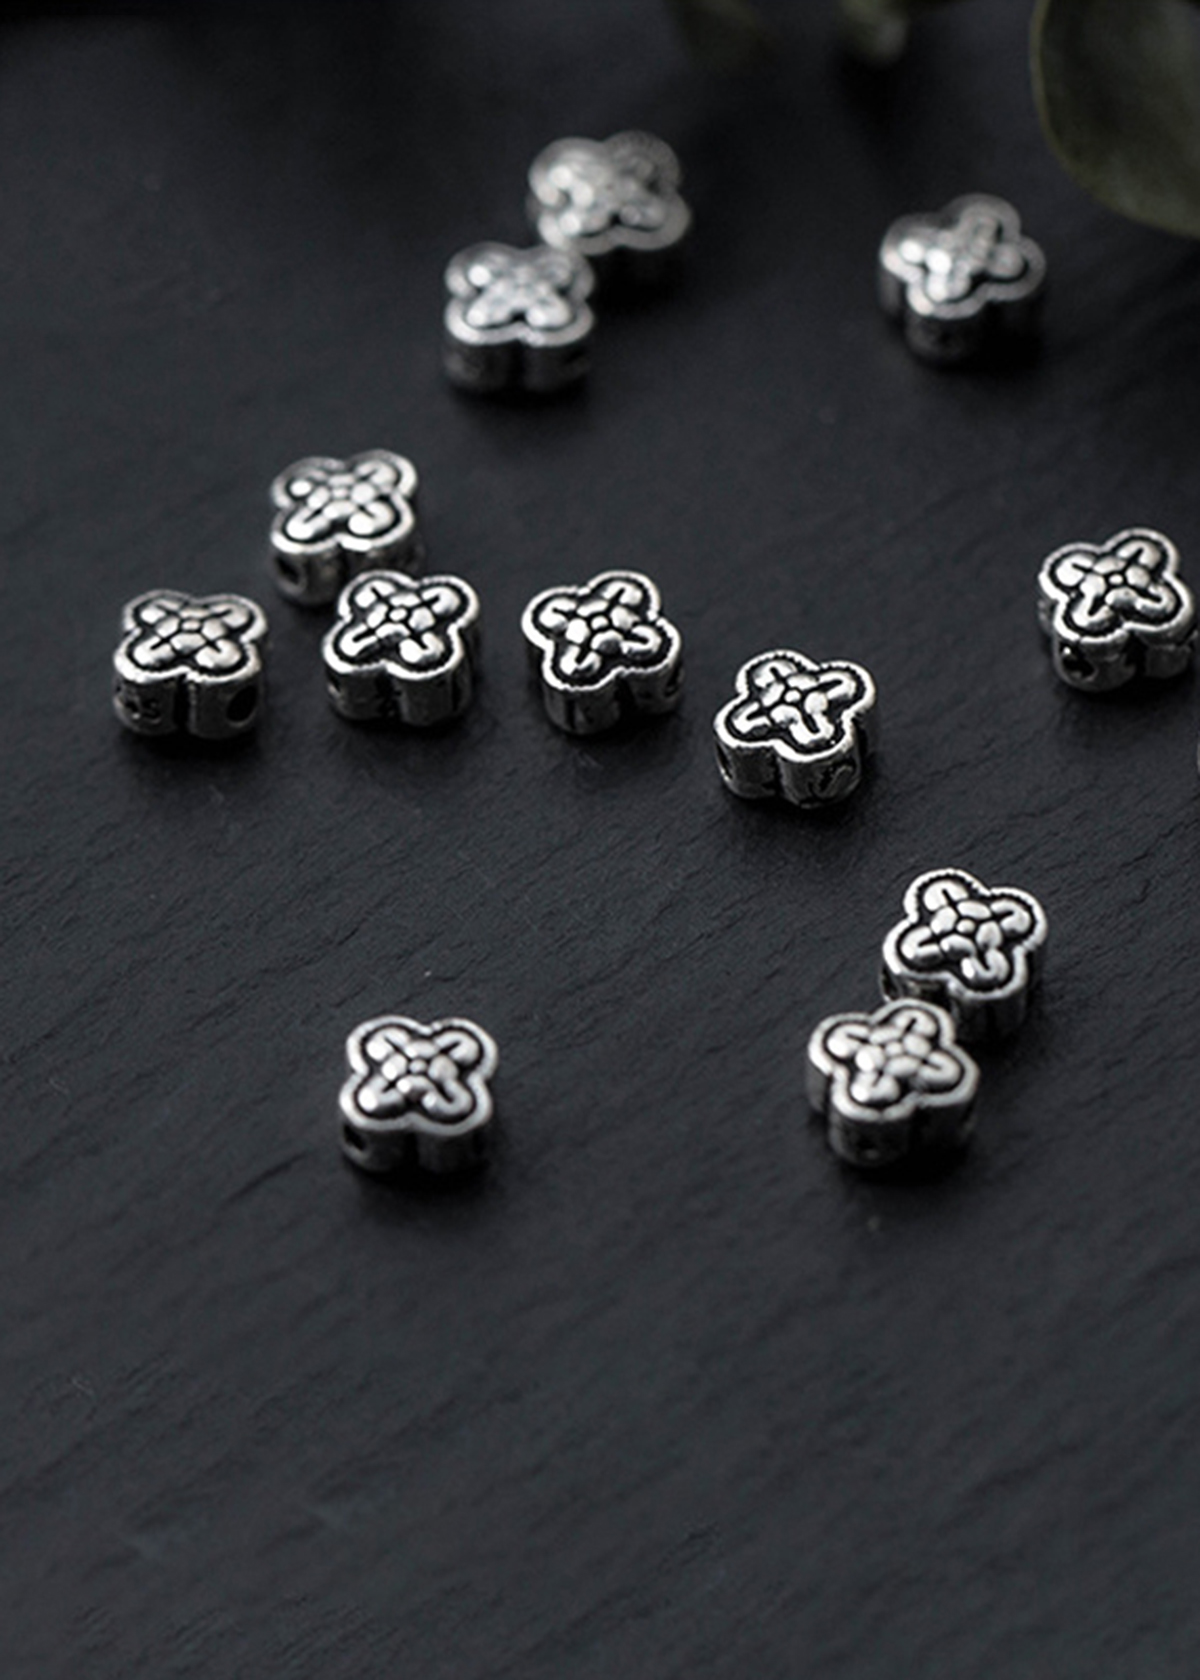 Combo 3 cái charm bạc họa tiết hoa xỏ ngang - Ngọc Quý Gemstones